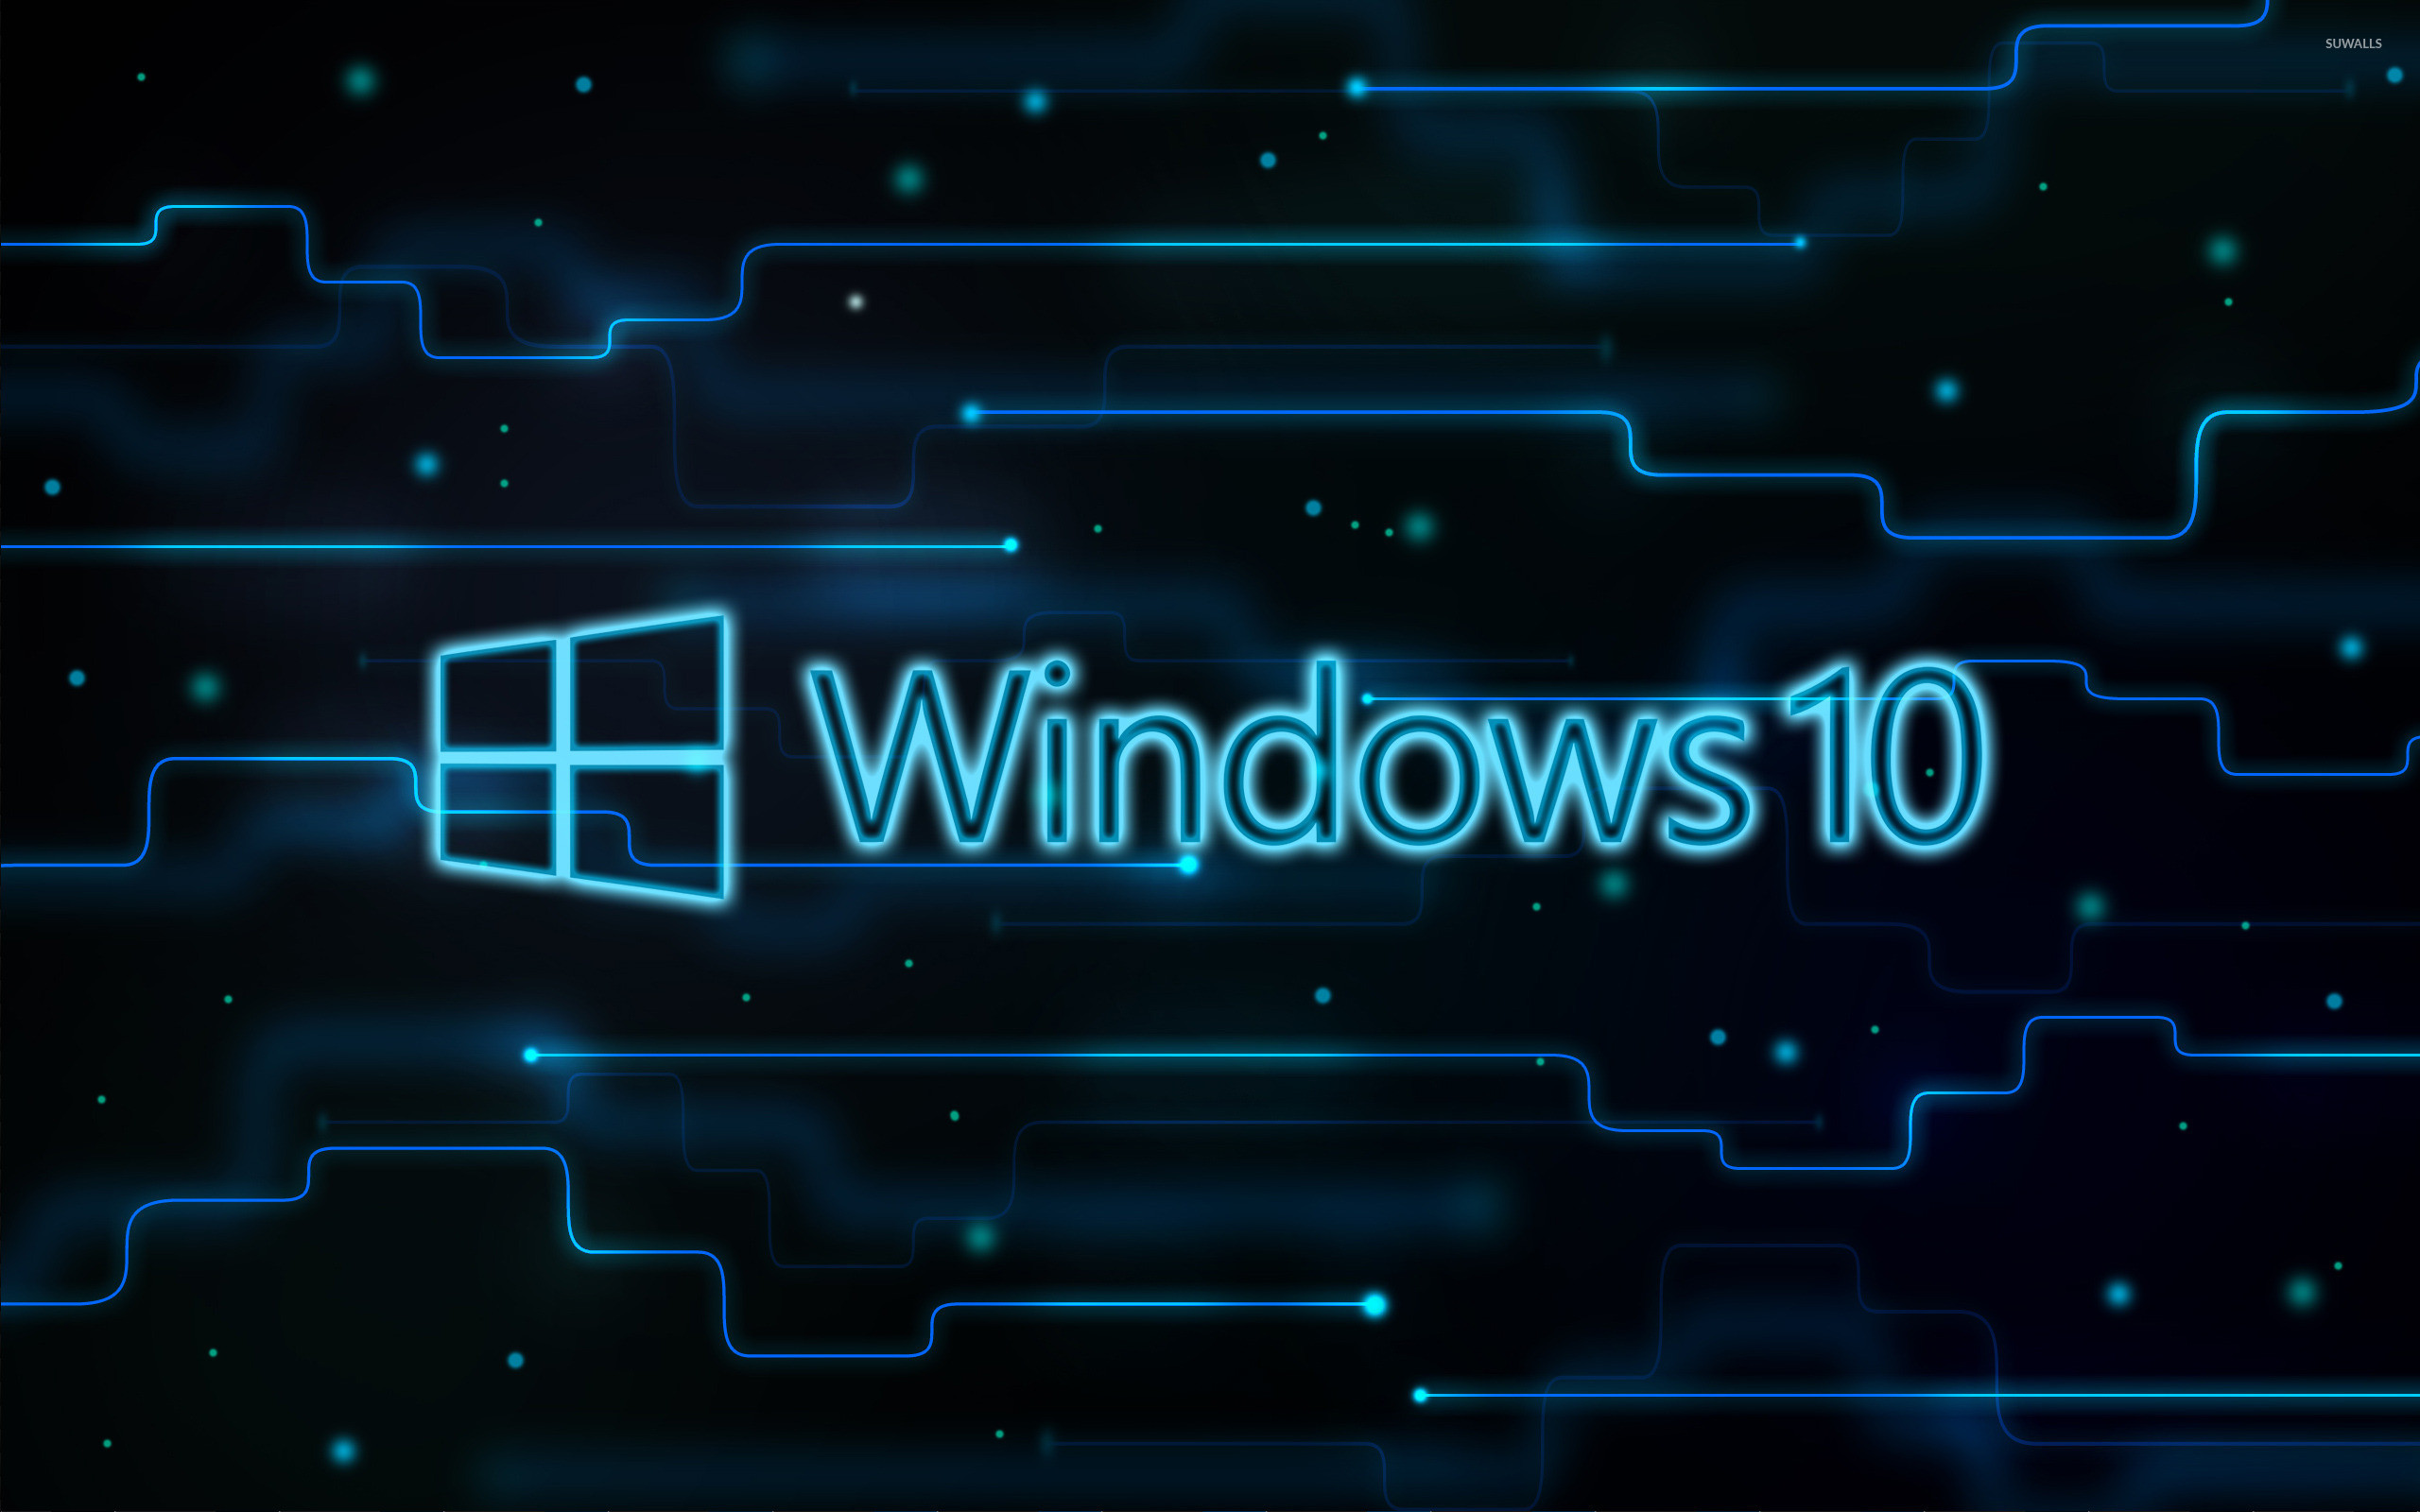 2560x1600 Windows 10 glowing logo on a network wallpaper